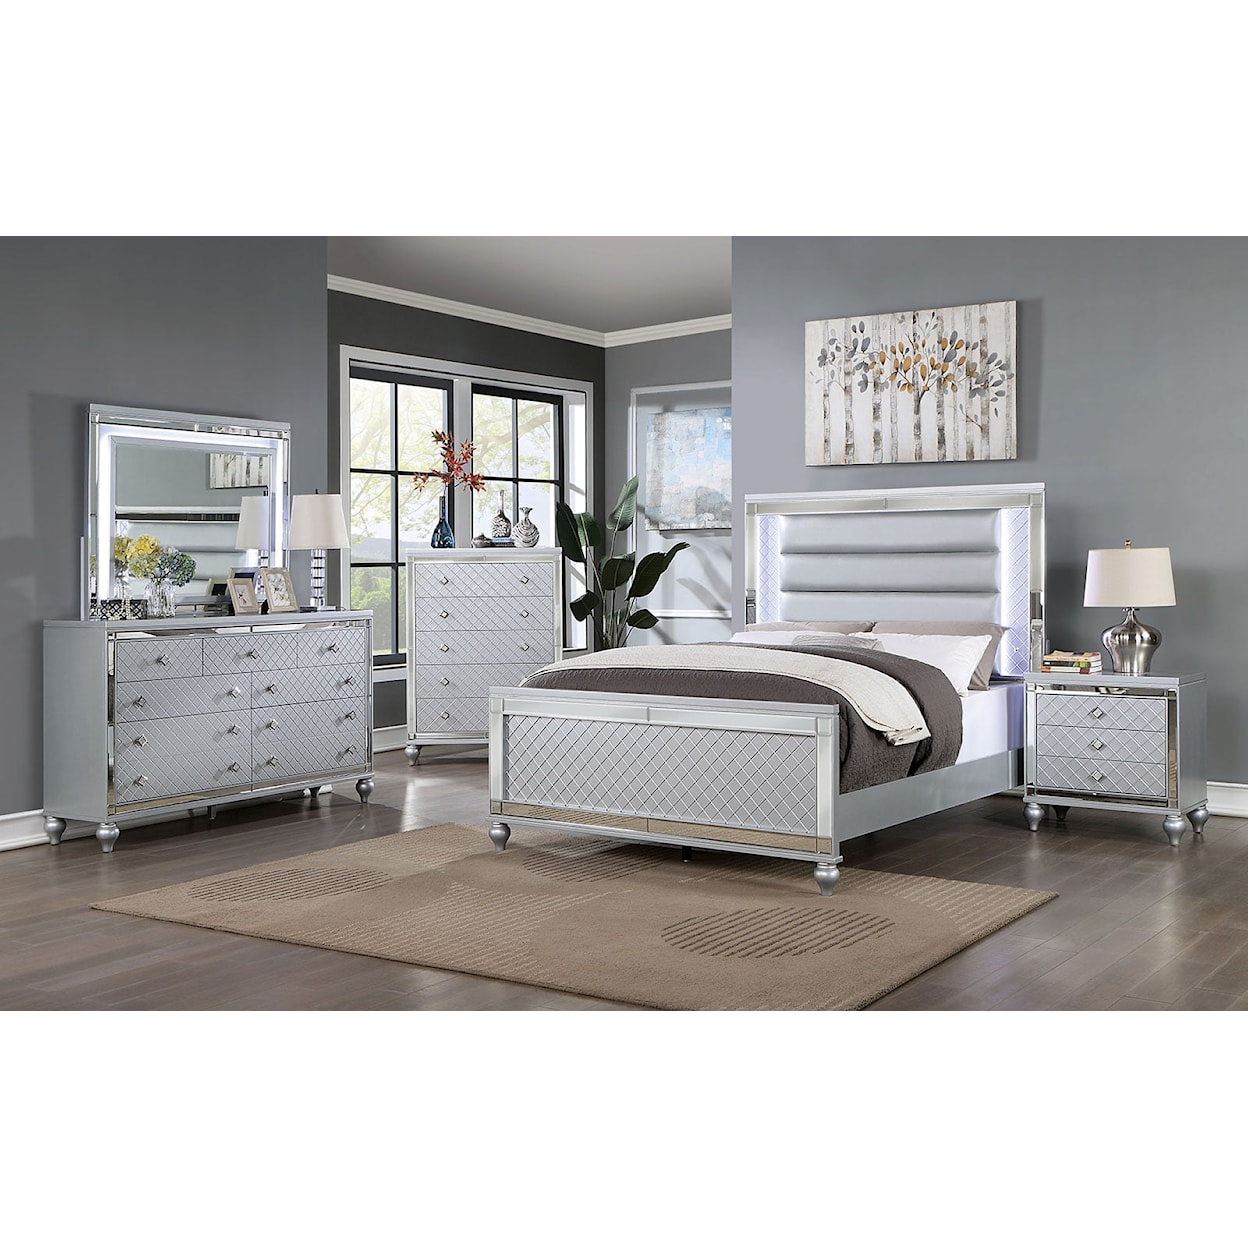 Furniture of America CALANDRIA 4-Piece Queen Bedroom Set